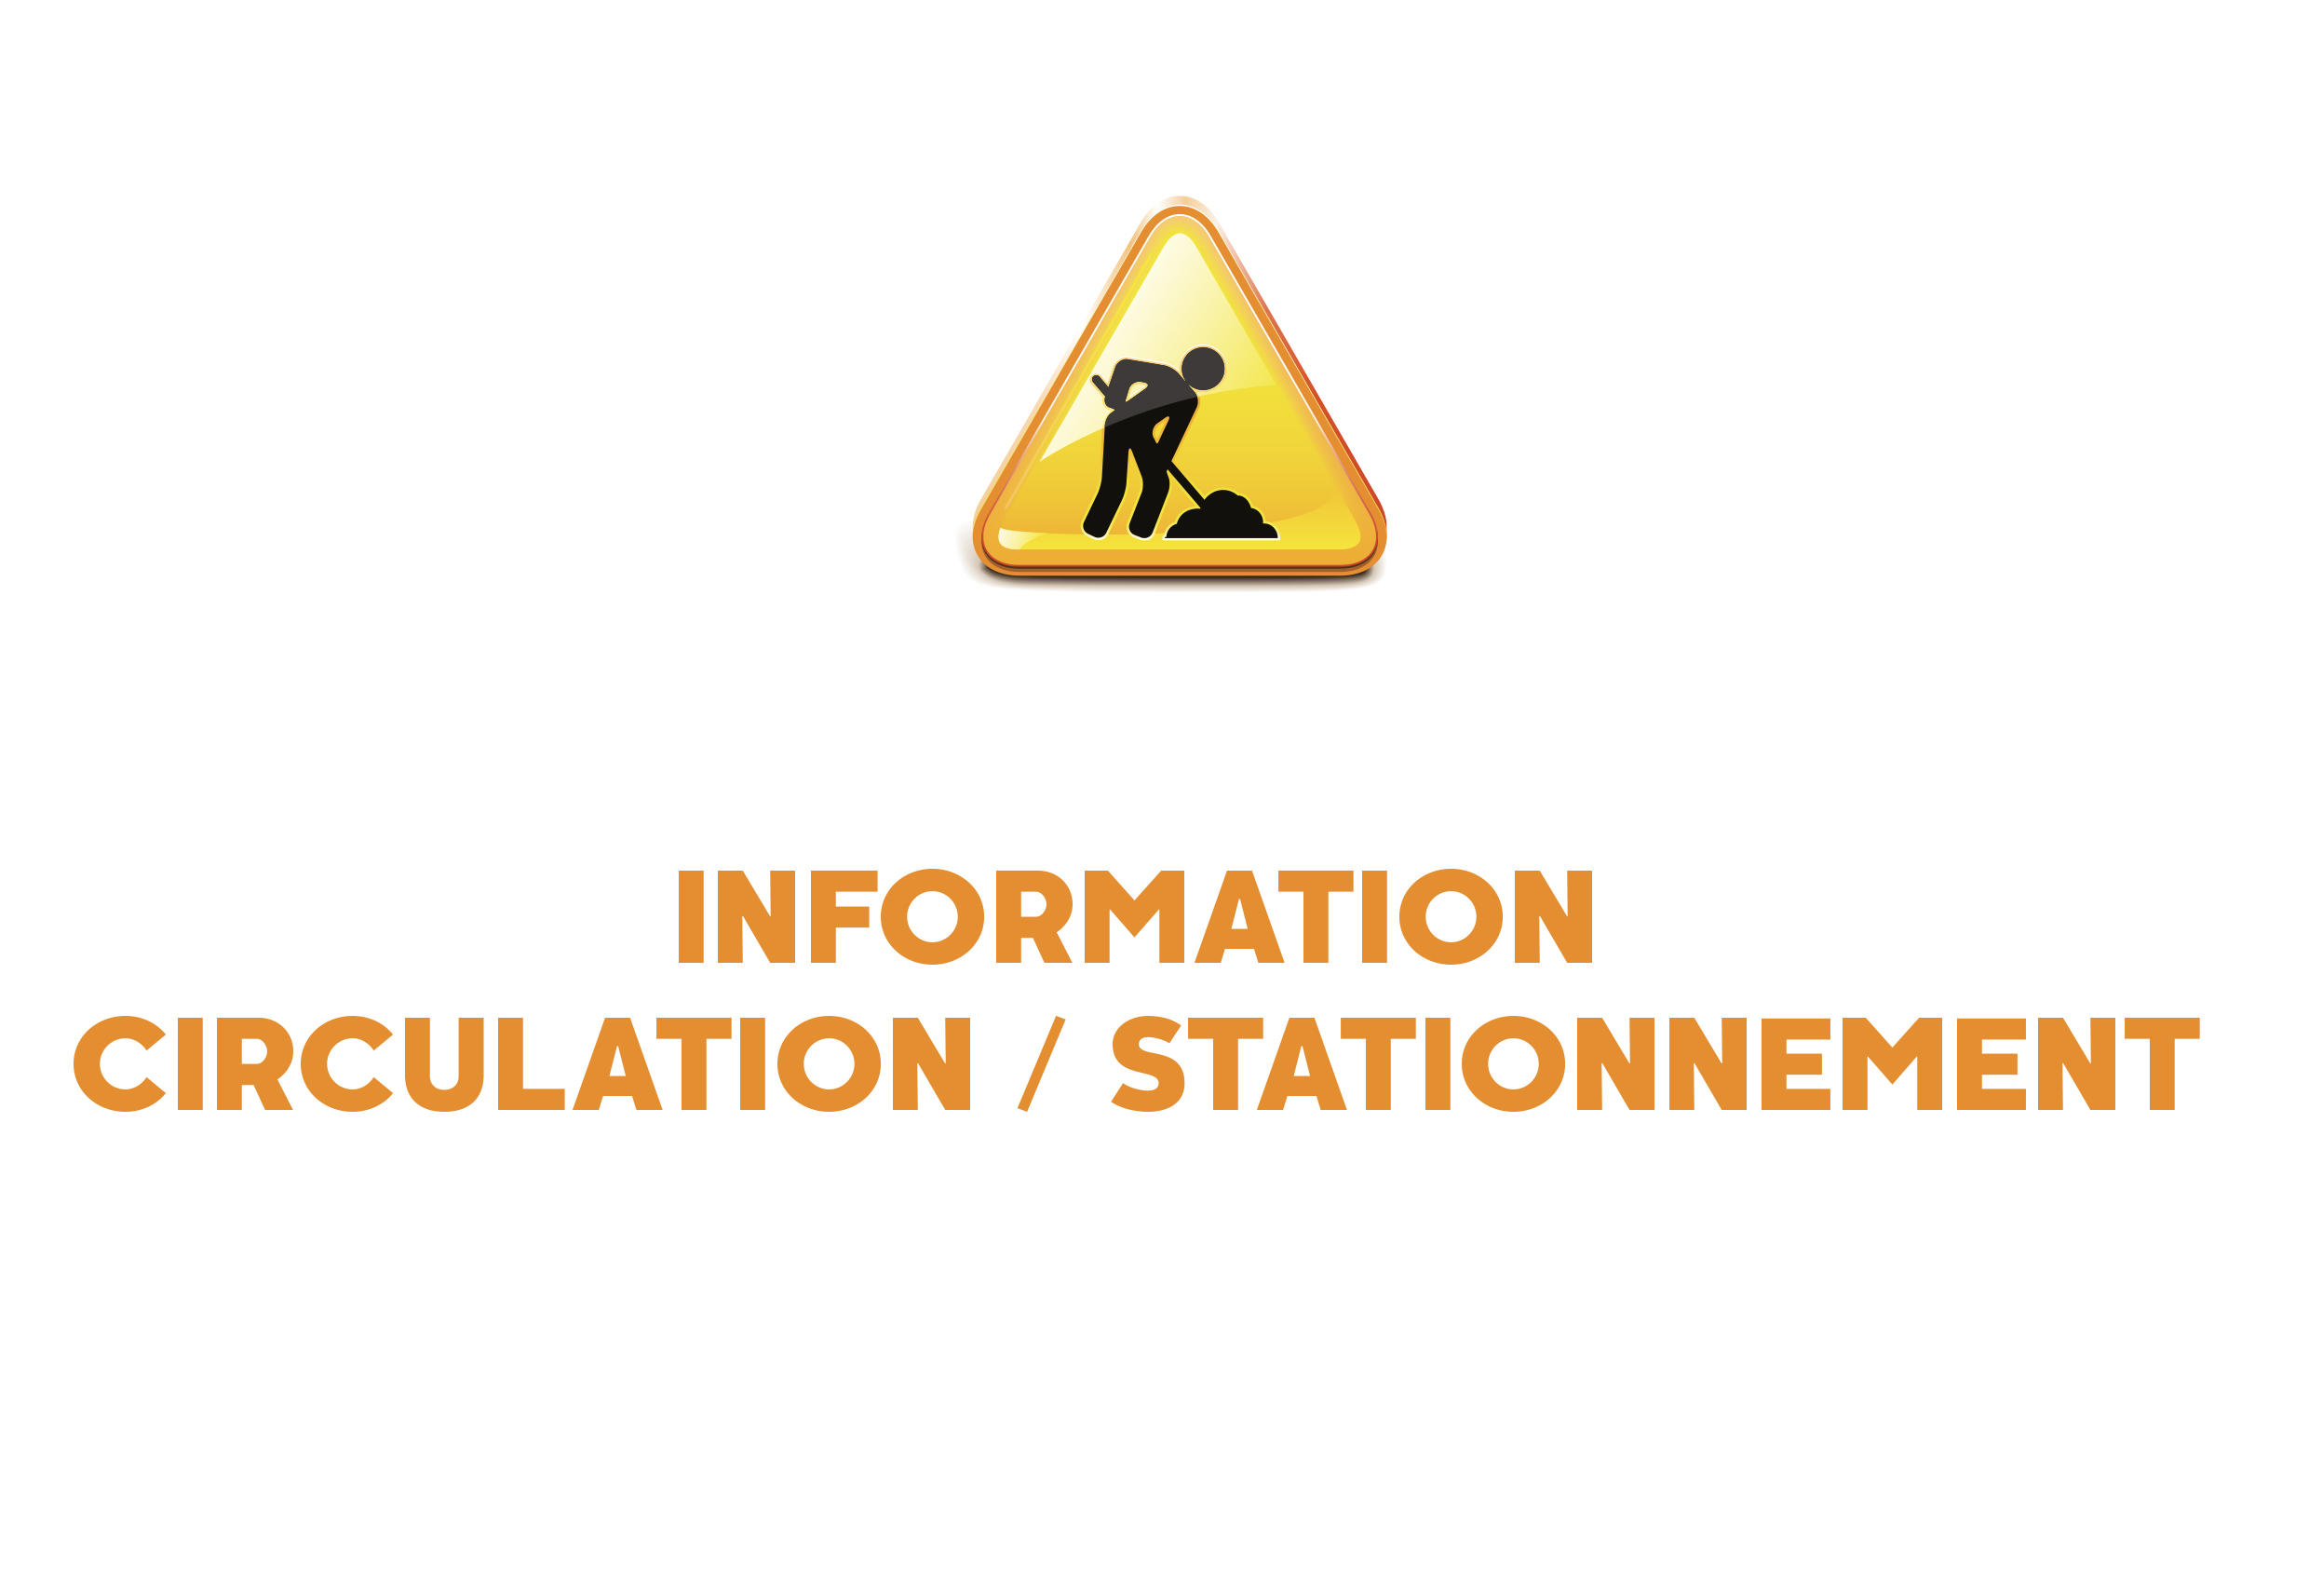 Information Circulation / Stationnement